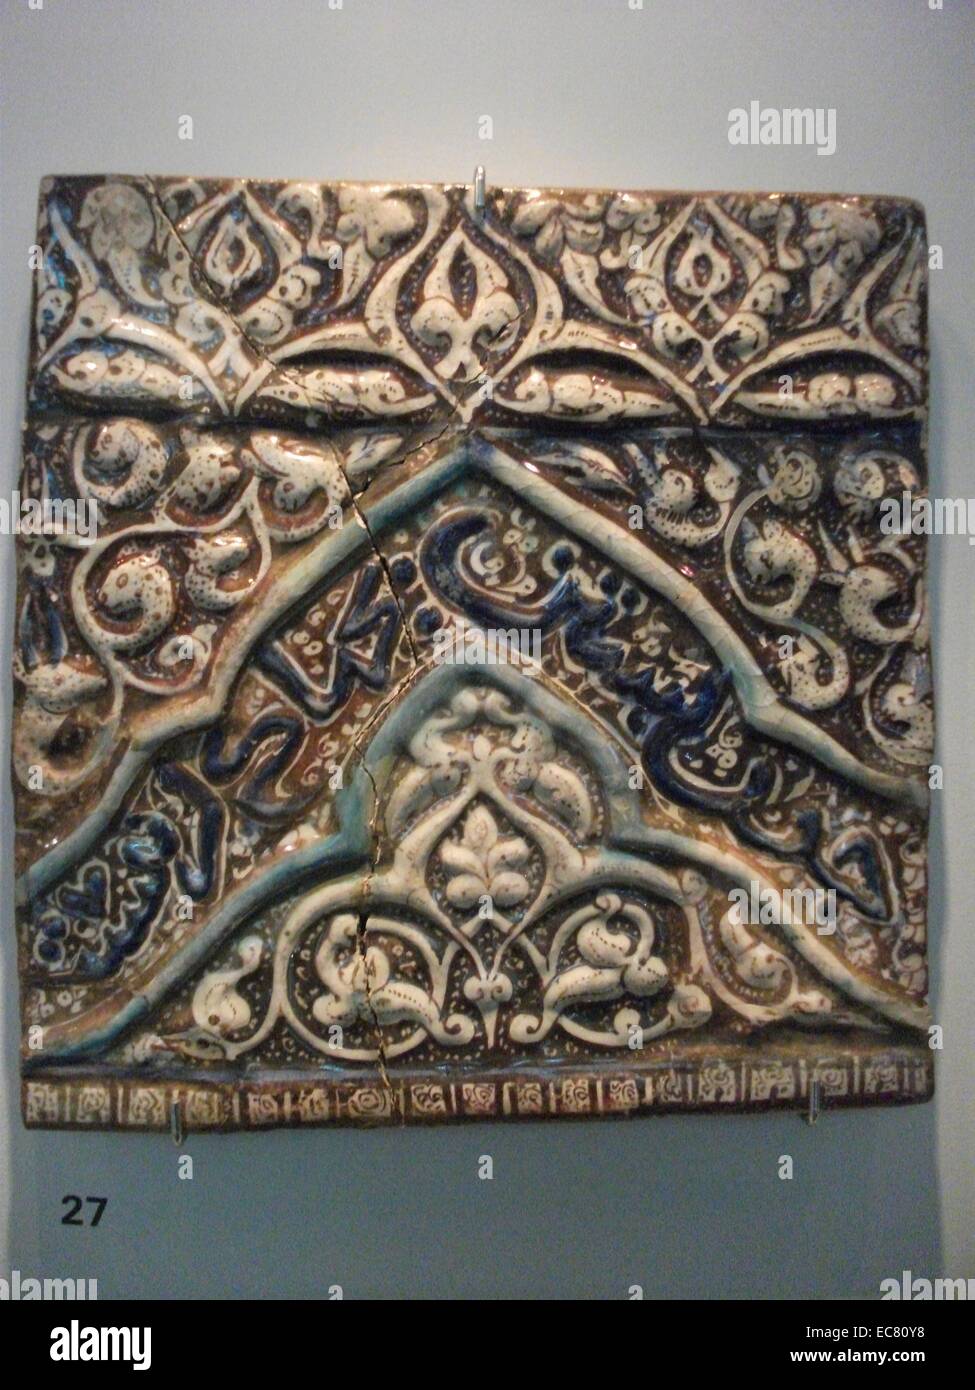 Iraniano, marrone, blu e bianco piastrelle smaltate, persiano XIII - XIV secolo. La fabbricazione di piastrelle (mattoni smaltati) in Iran risalgono addirittura al periodo preistorico. Foto Stock